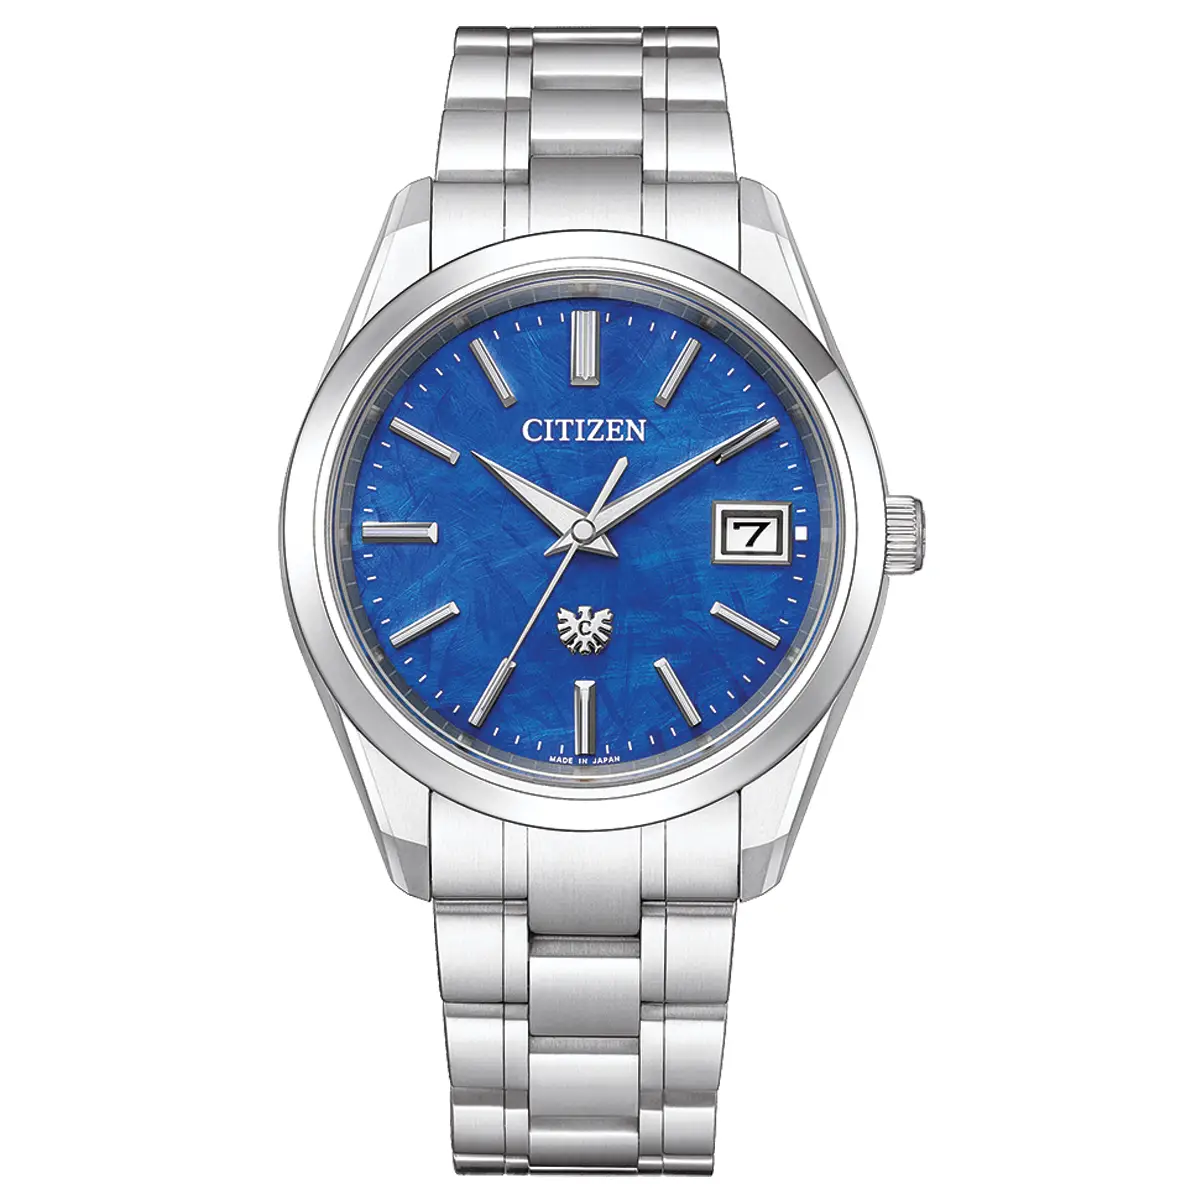 Đồng hồ The Citizen Eco-Drive AQ4100-57M với mặt số màu xanh. Dây đeo bằng titanium. Thân vỏ bằng titanium.